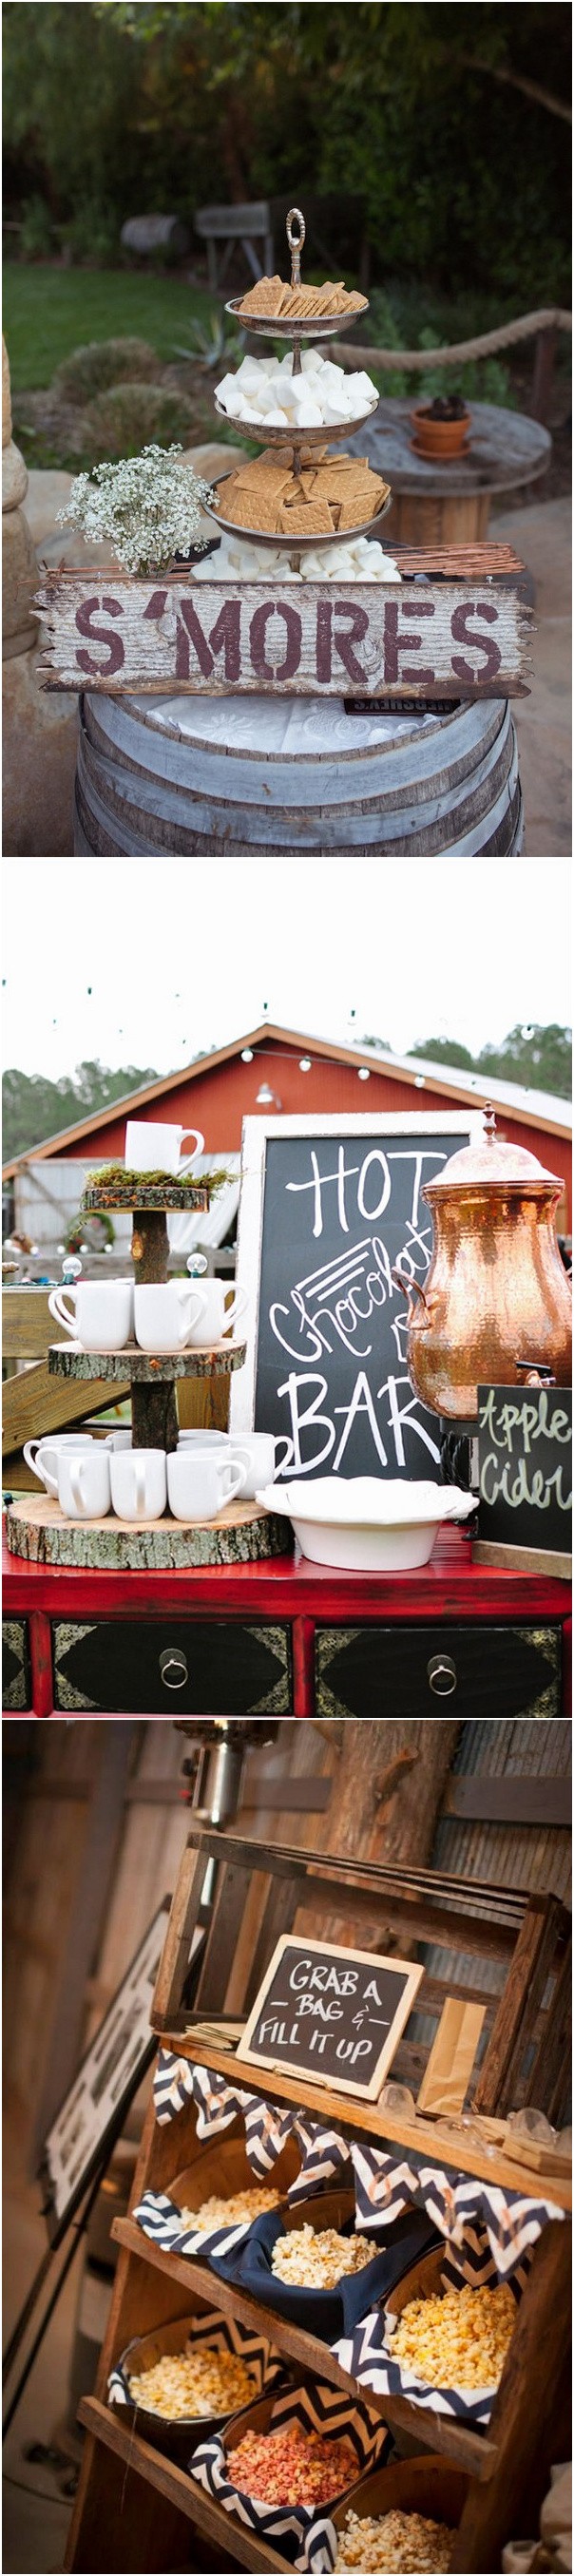 wedding food station ideas for barn wedding